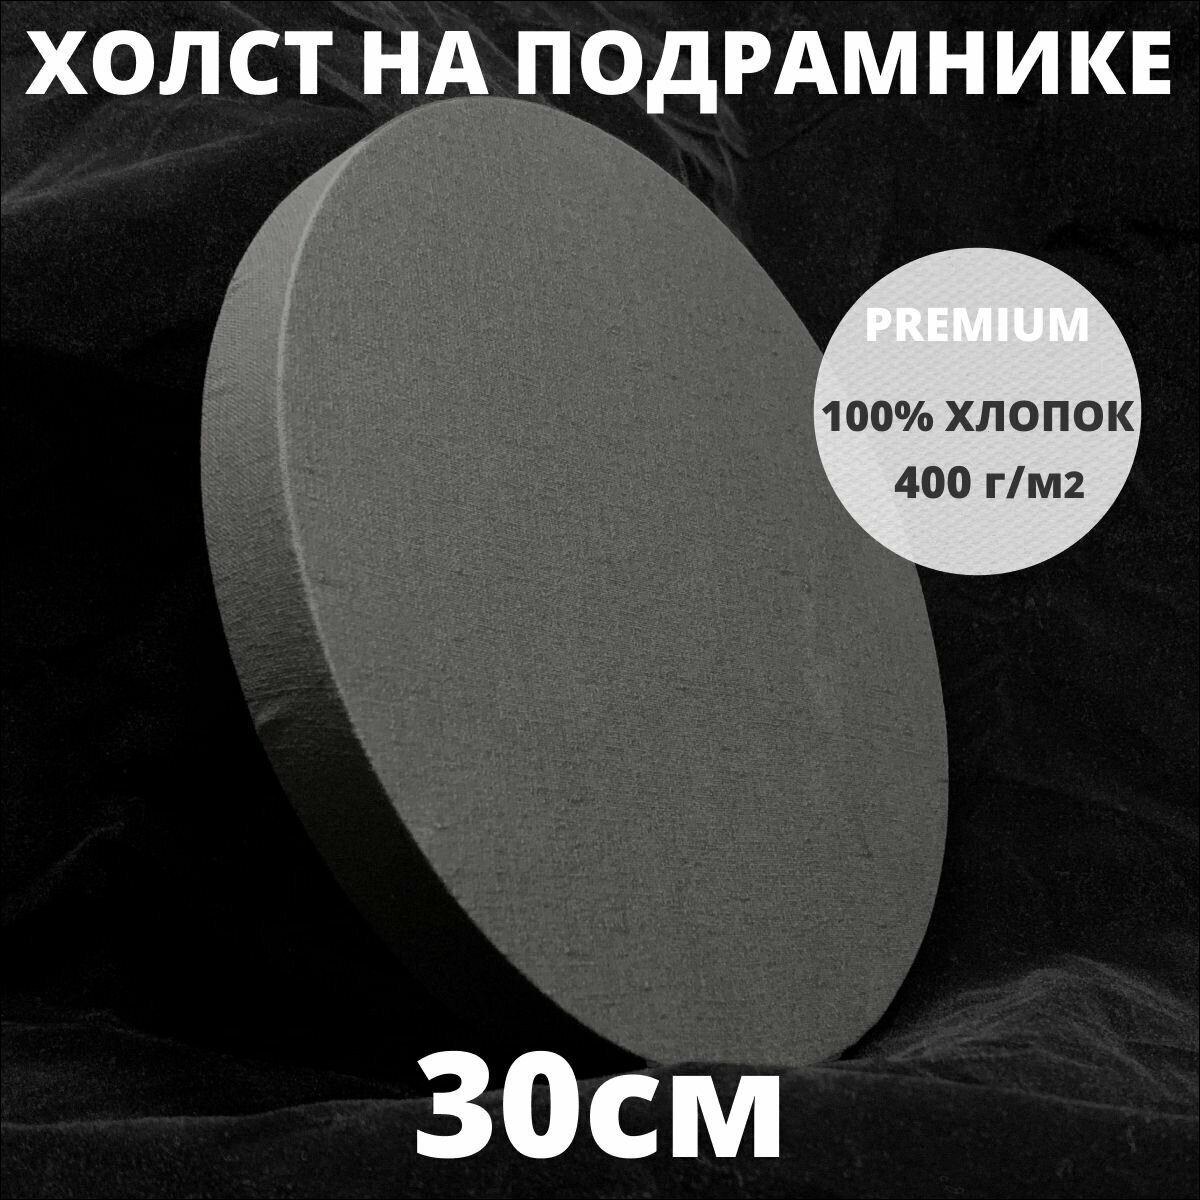 Холст на подрамнике круглый грунтованный диаметр 30 см, плотность 400 г/м2